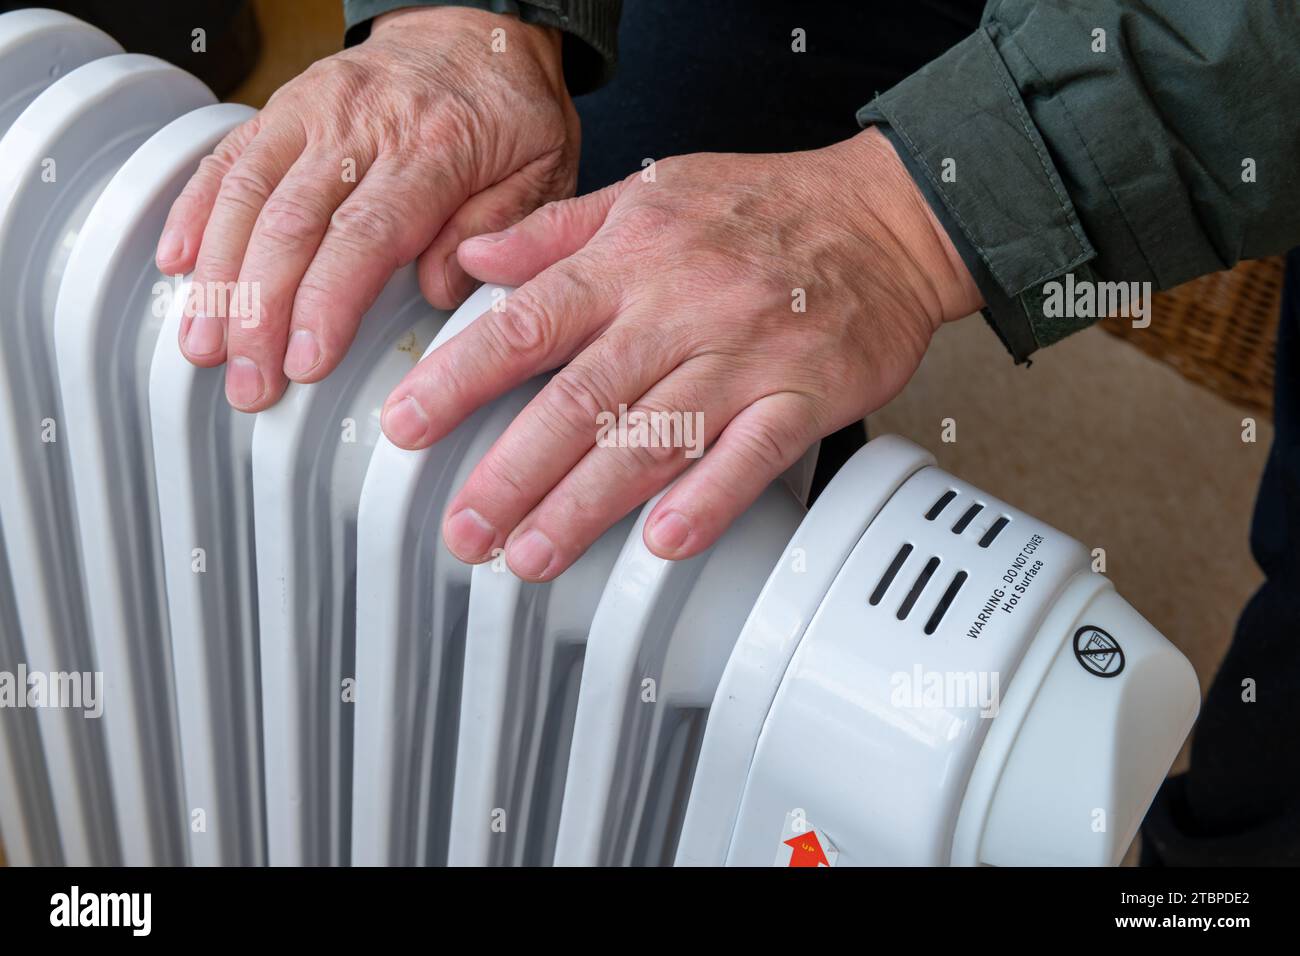 Cerca de una persona poniendo las manos en un calentador eléctrico portátil para mantener el calor en el frío del invierno. Foto de stock